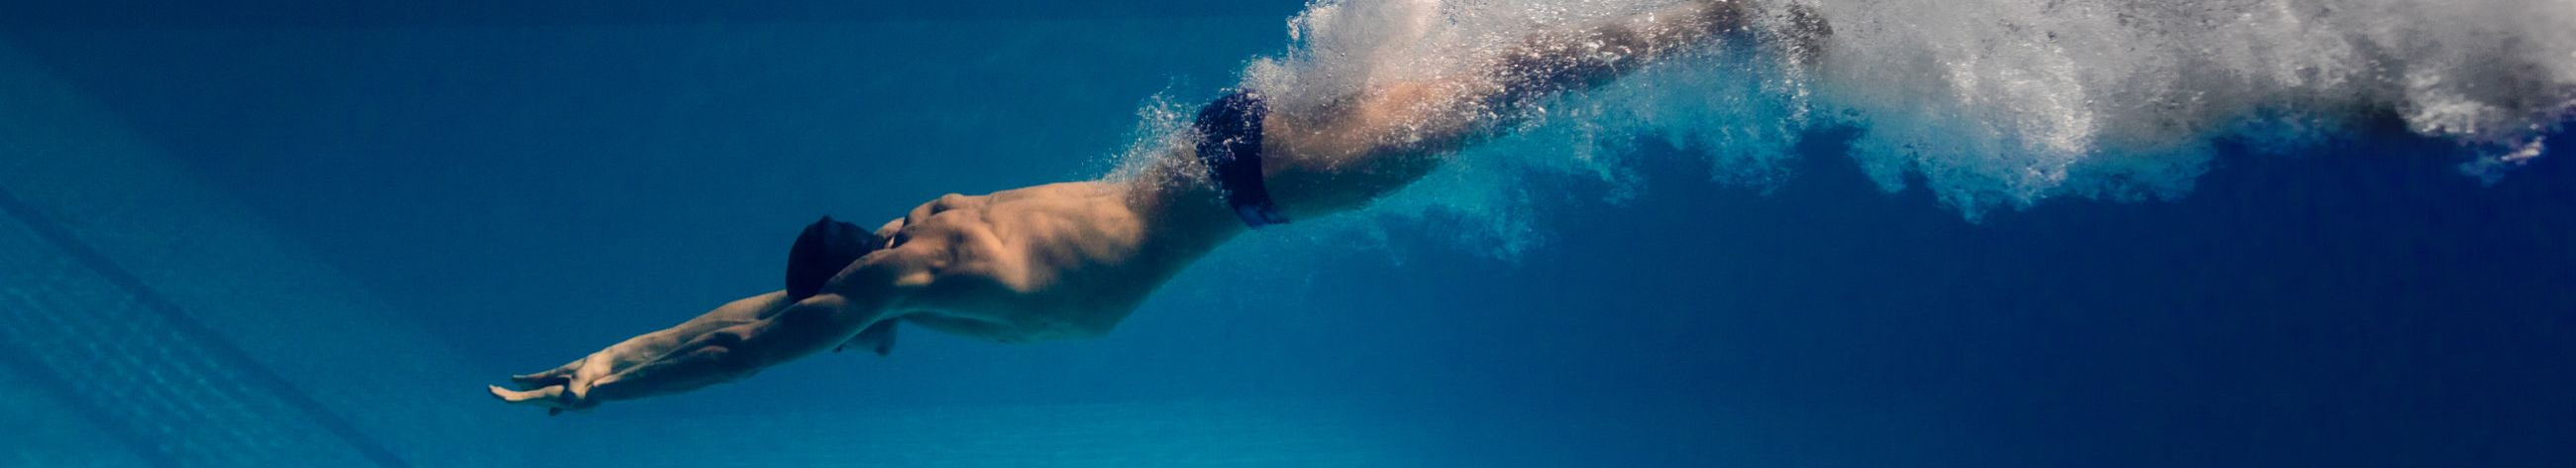 Tegeleme kvaliteetse ujumisvarustuse müümisega, mis on mõeldud nii harrastajatele kui ka võistlussportlastele, et parandada nende sooritust ja mugavust vees.